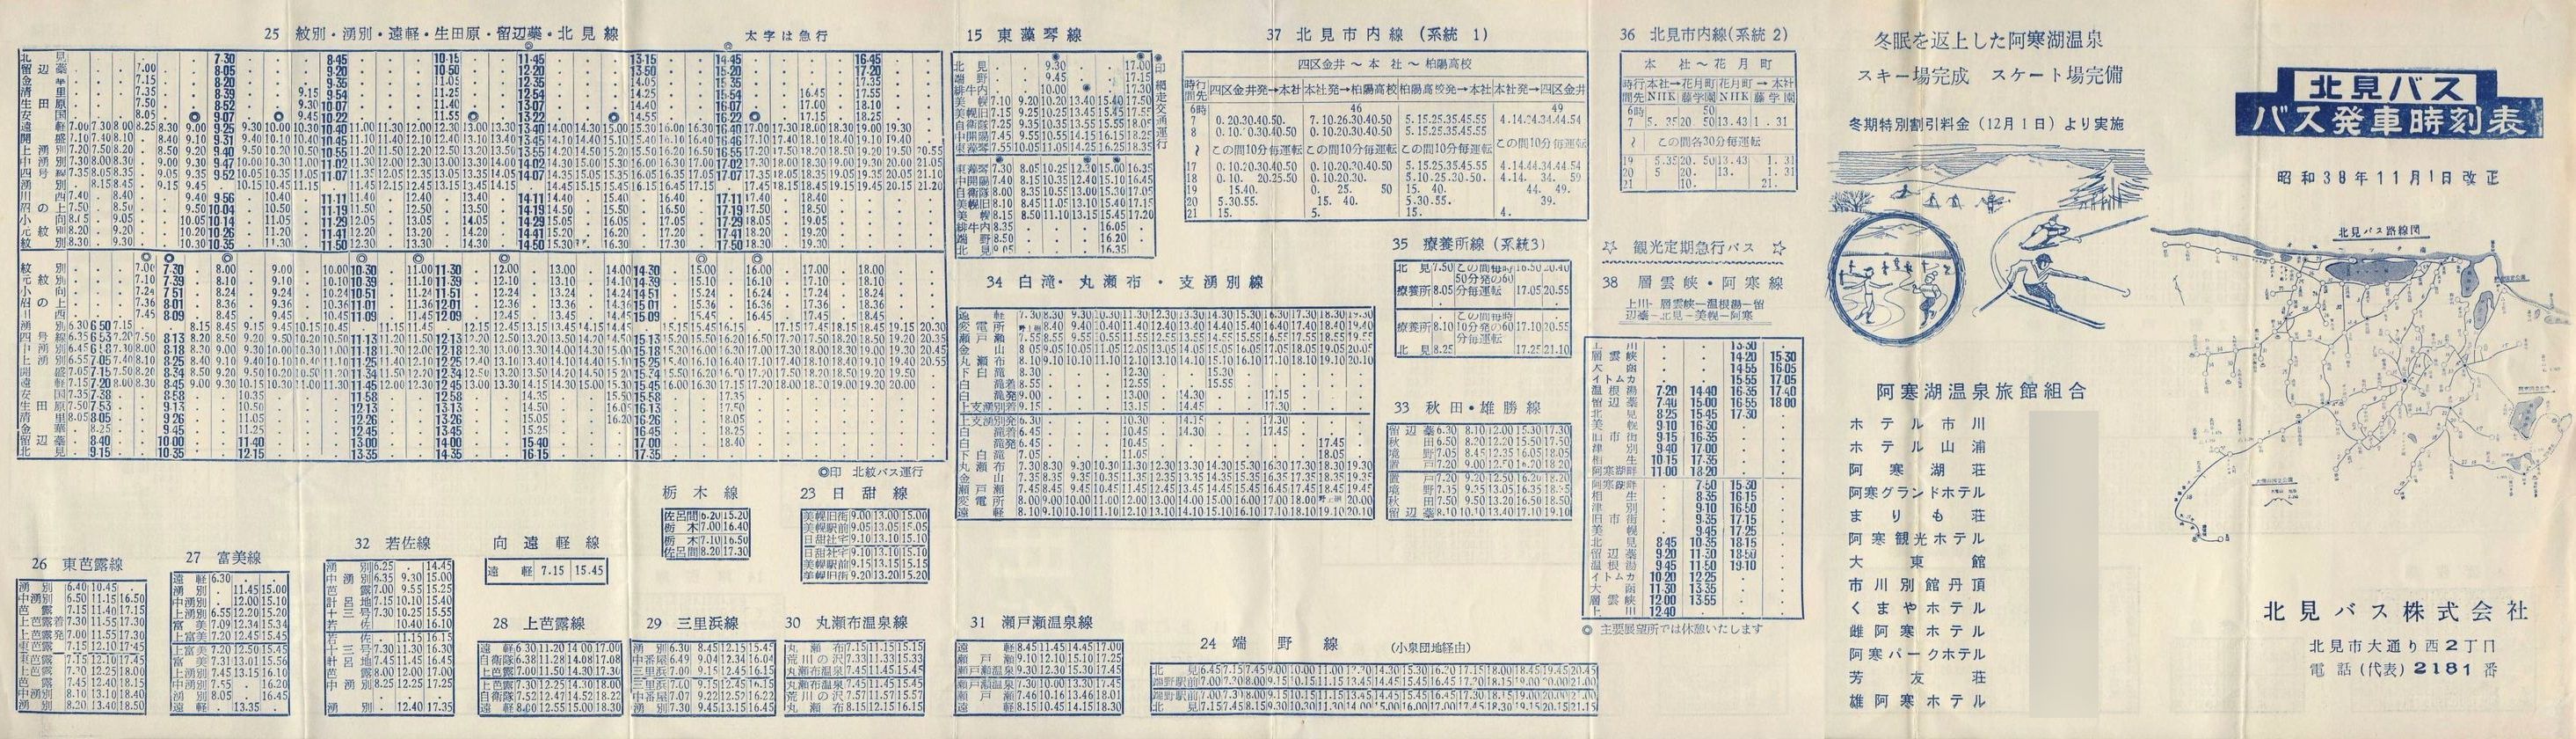 1963-11-01改正_北見バス_時刻表表面